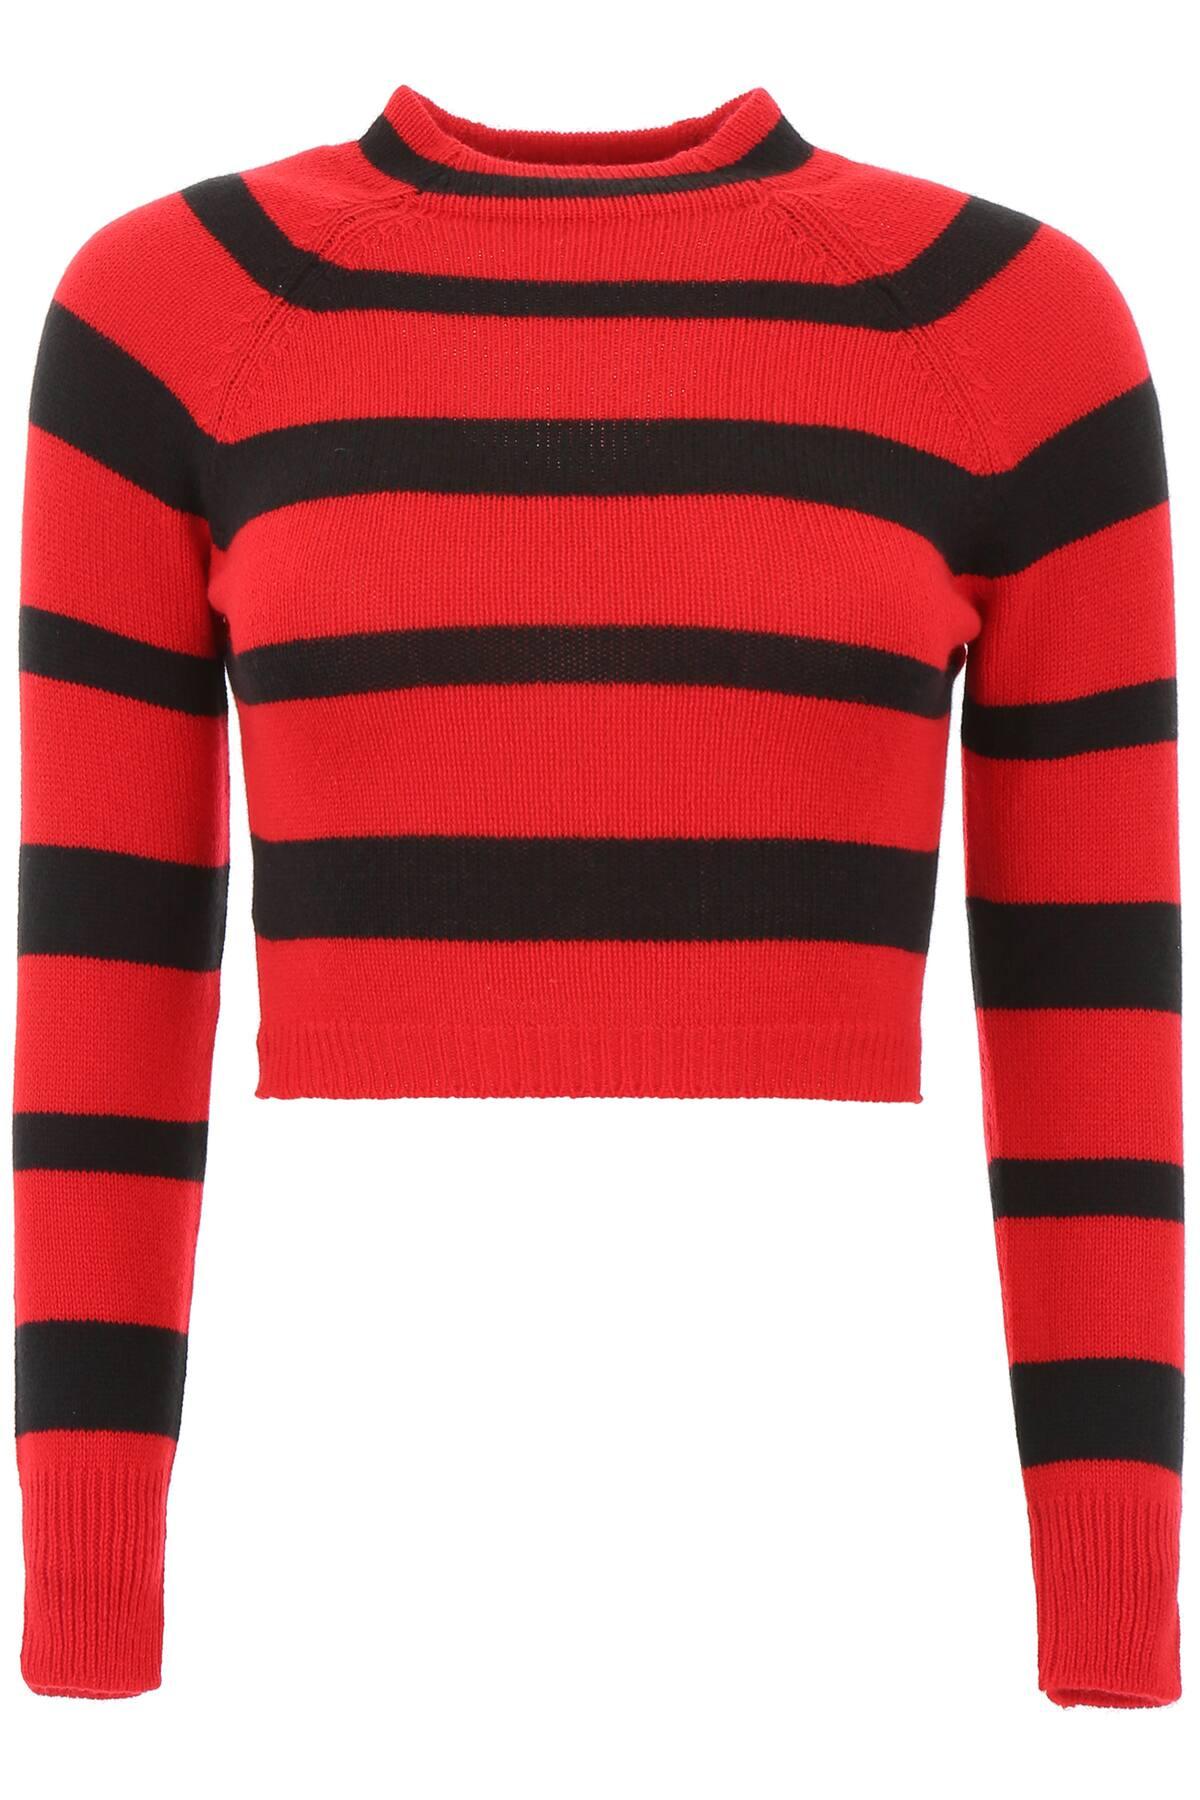 Miu Miu Striped Cashmere Pullover in Red,Black (Red) - Lyst